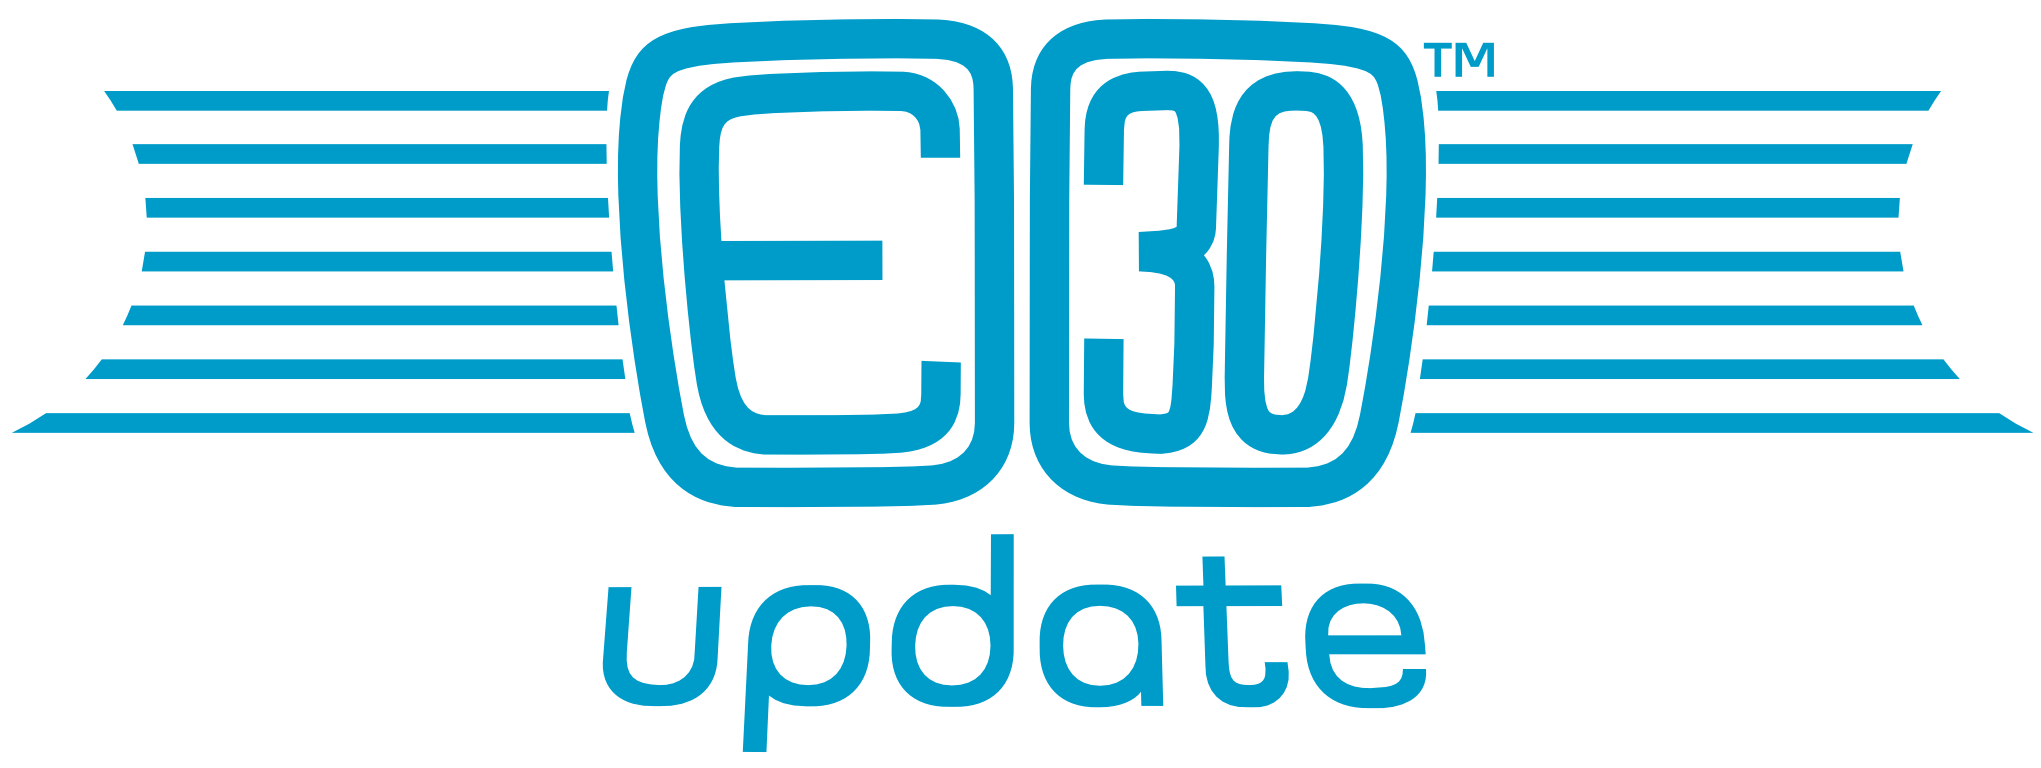 E30 Update